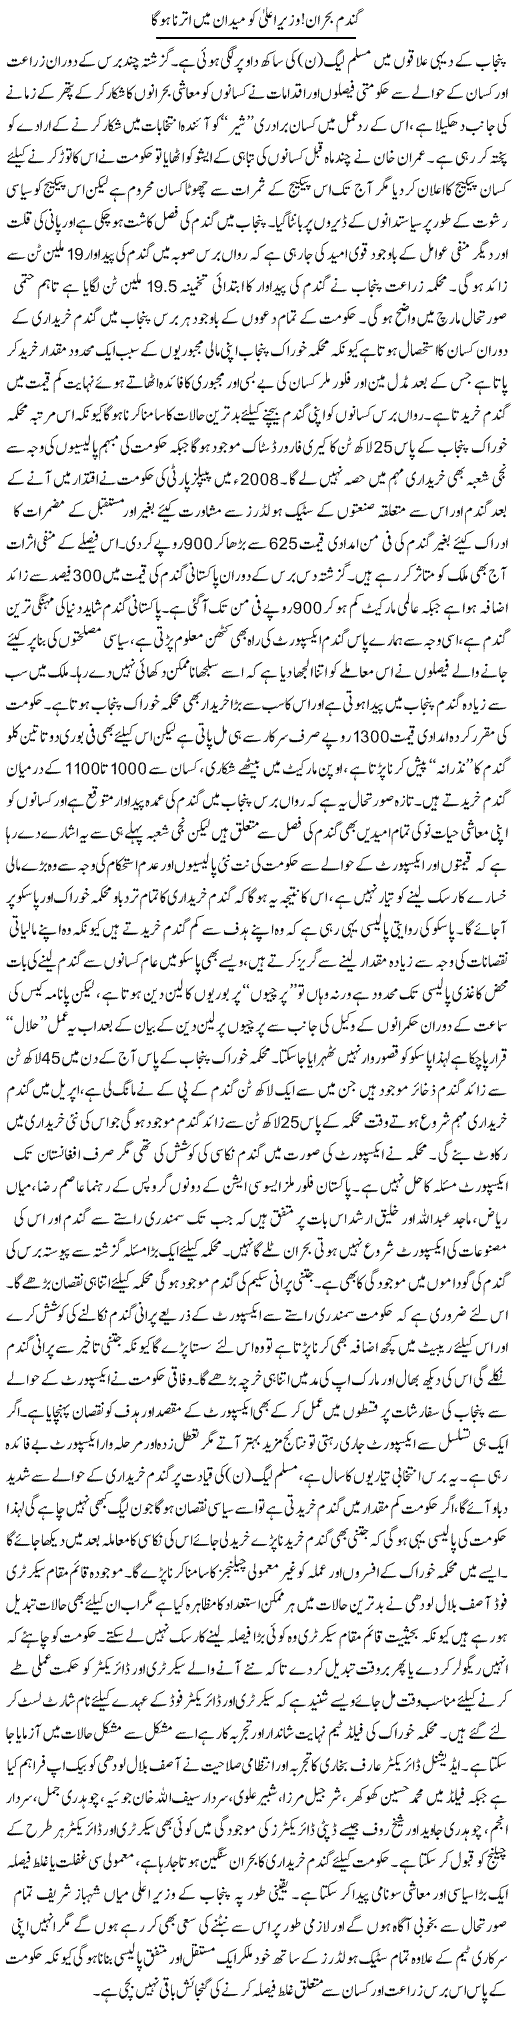 Gandum Bohraan, Wazeer Aala Ko Maidan Mein Utarna Hoga | Rizwan Asif | Daily Urdu Columns